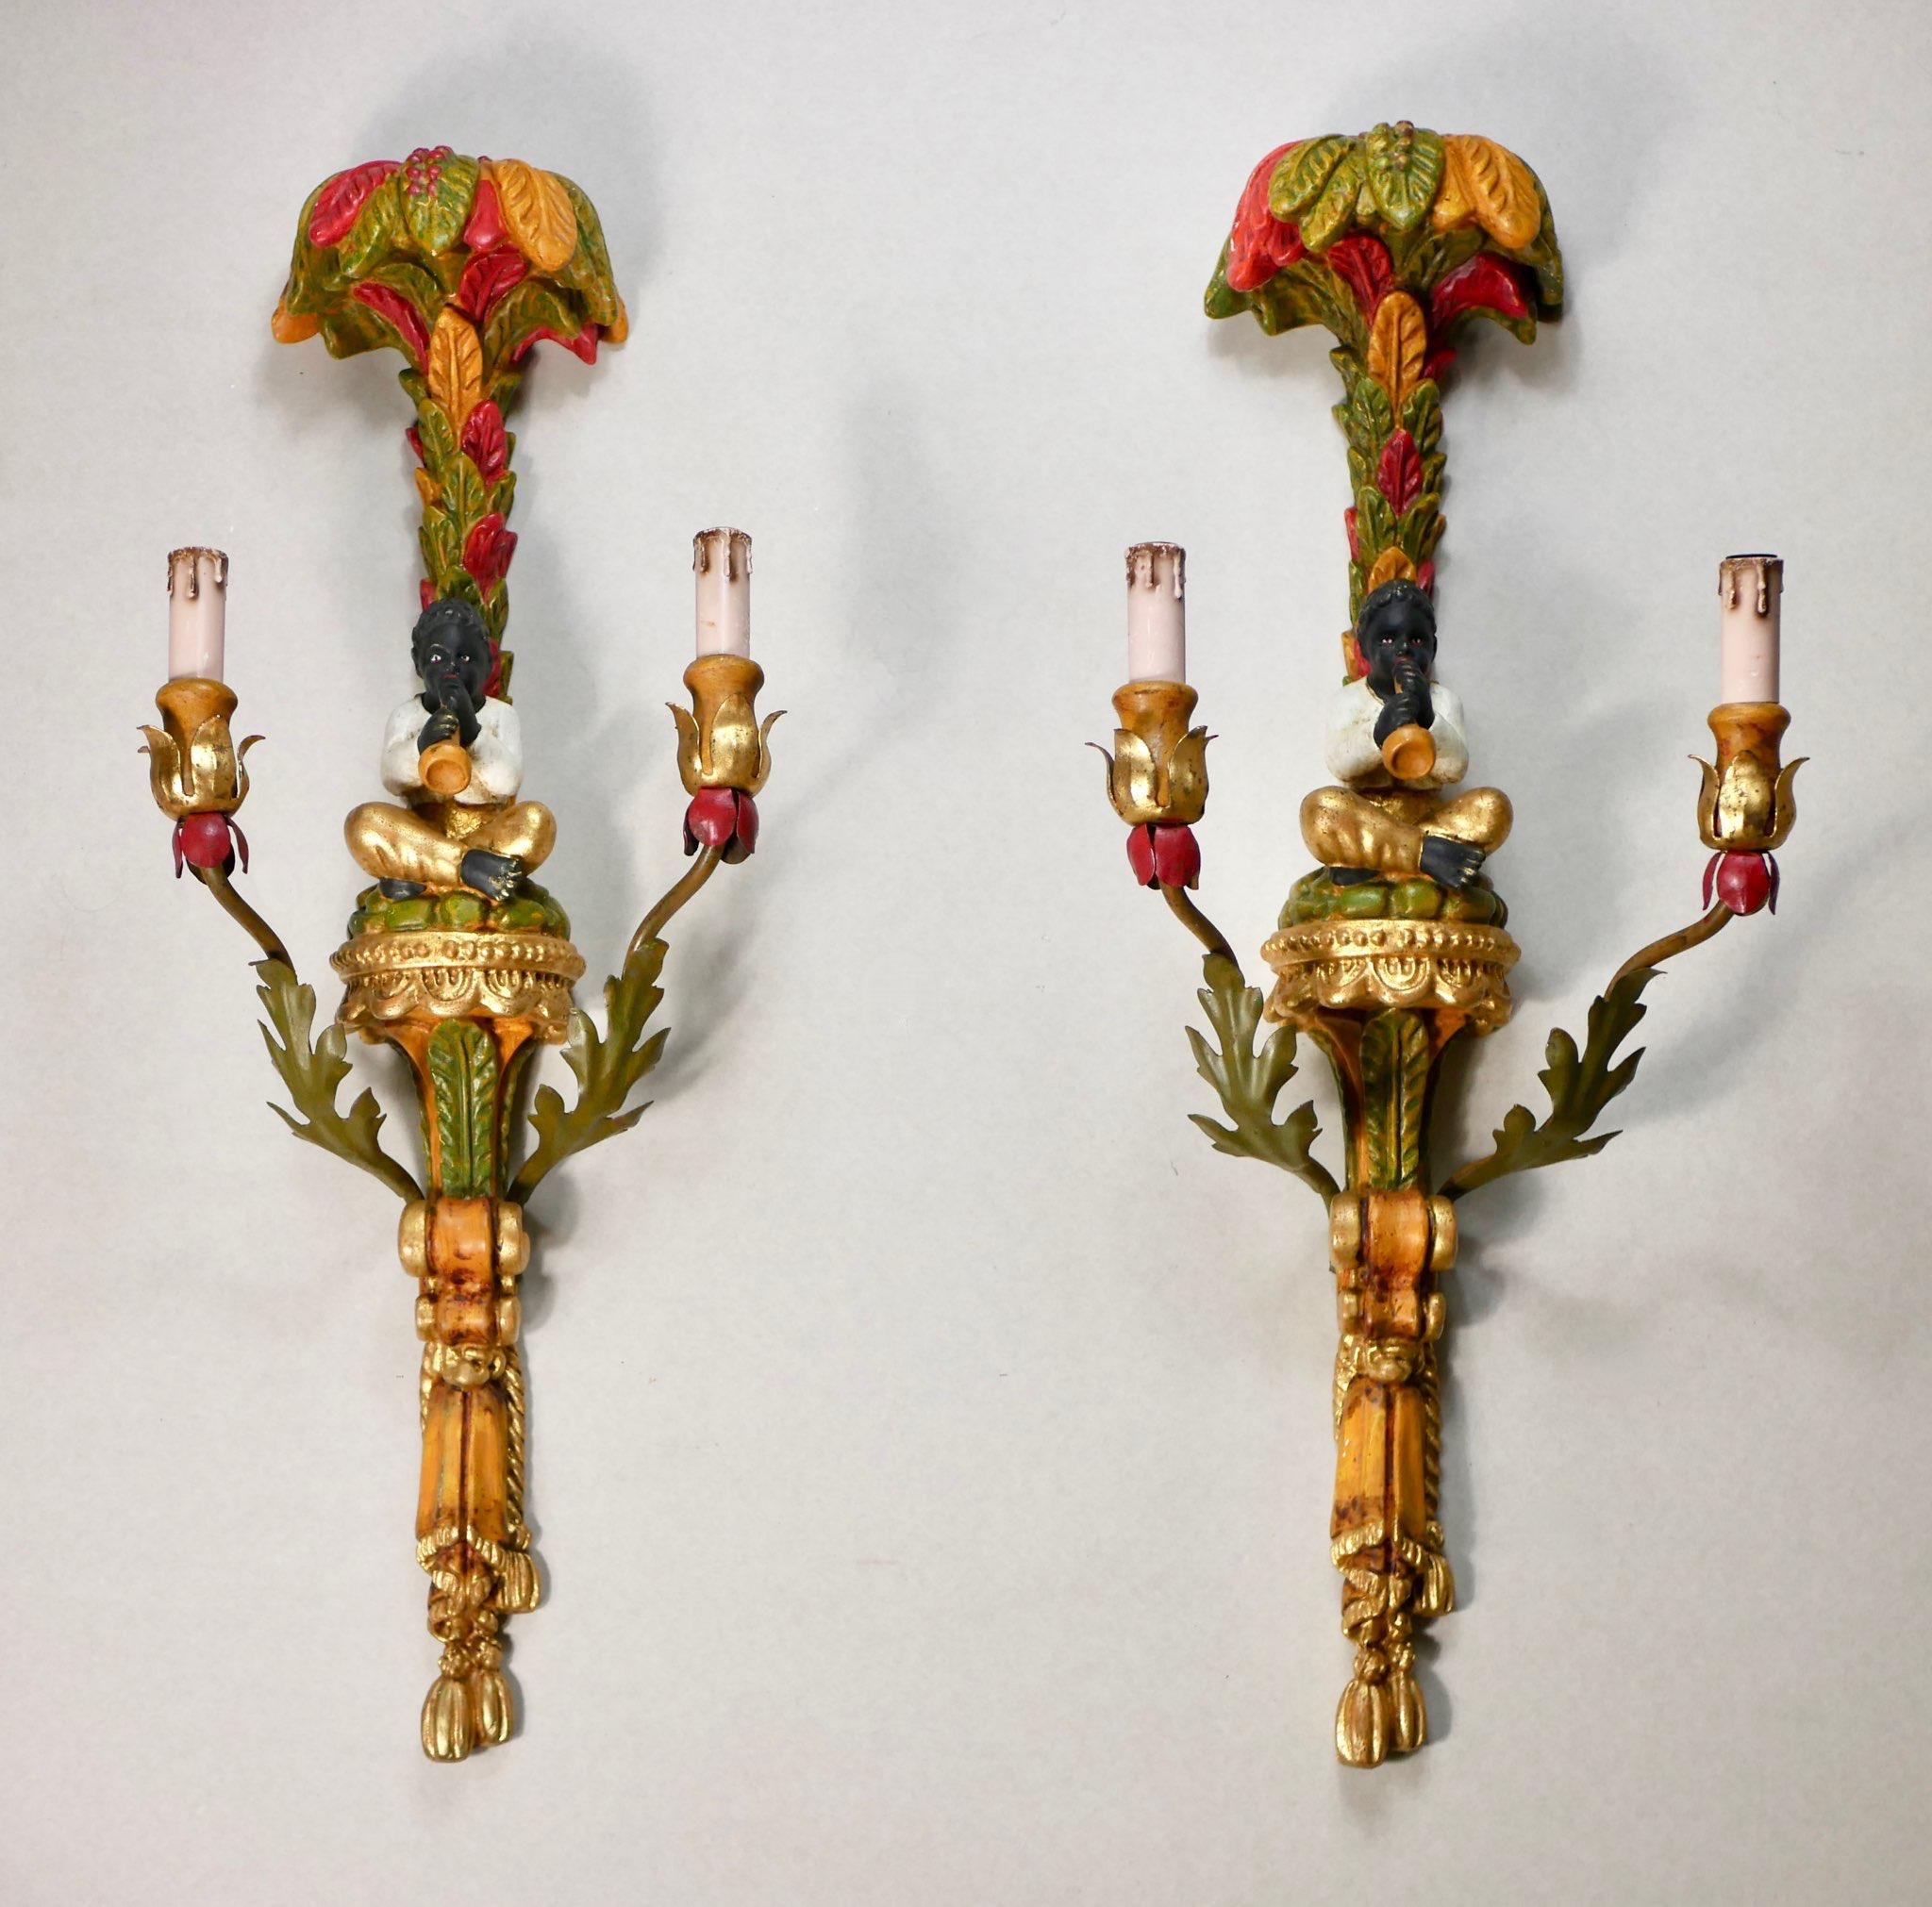 Wunderschönes Paar großer polychromer, handgeschnitzter Holzleuchter im Stil der venezianischen Kreationen des 18. Jahrhunderts, hergestellt in Italien in den frühen 1920er Jahren. 
Sie stellen einen Flöte spielenden Nubier unter einer Palme dar und